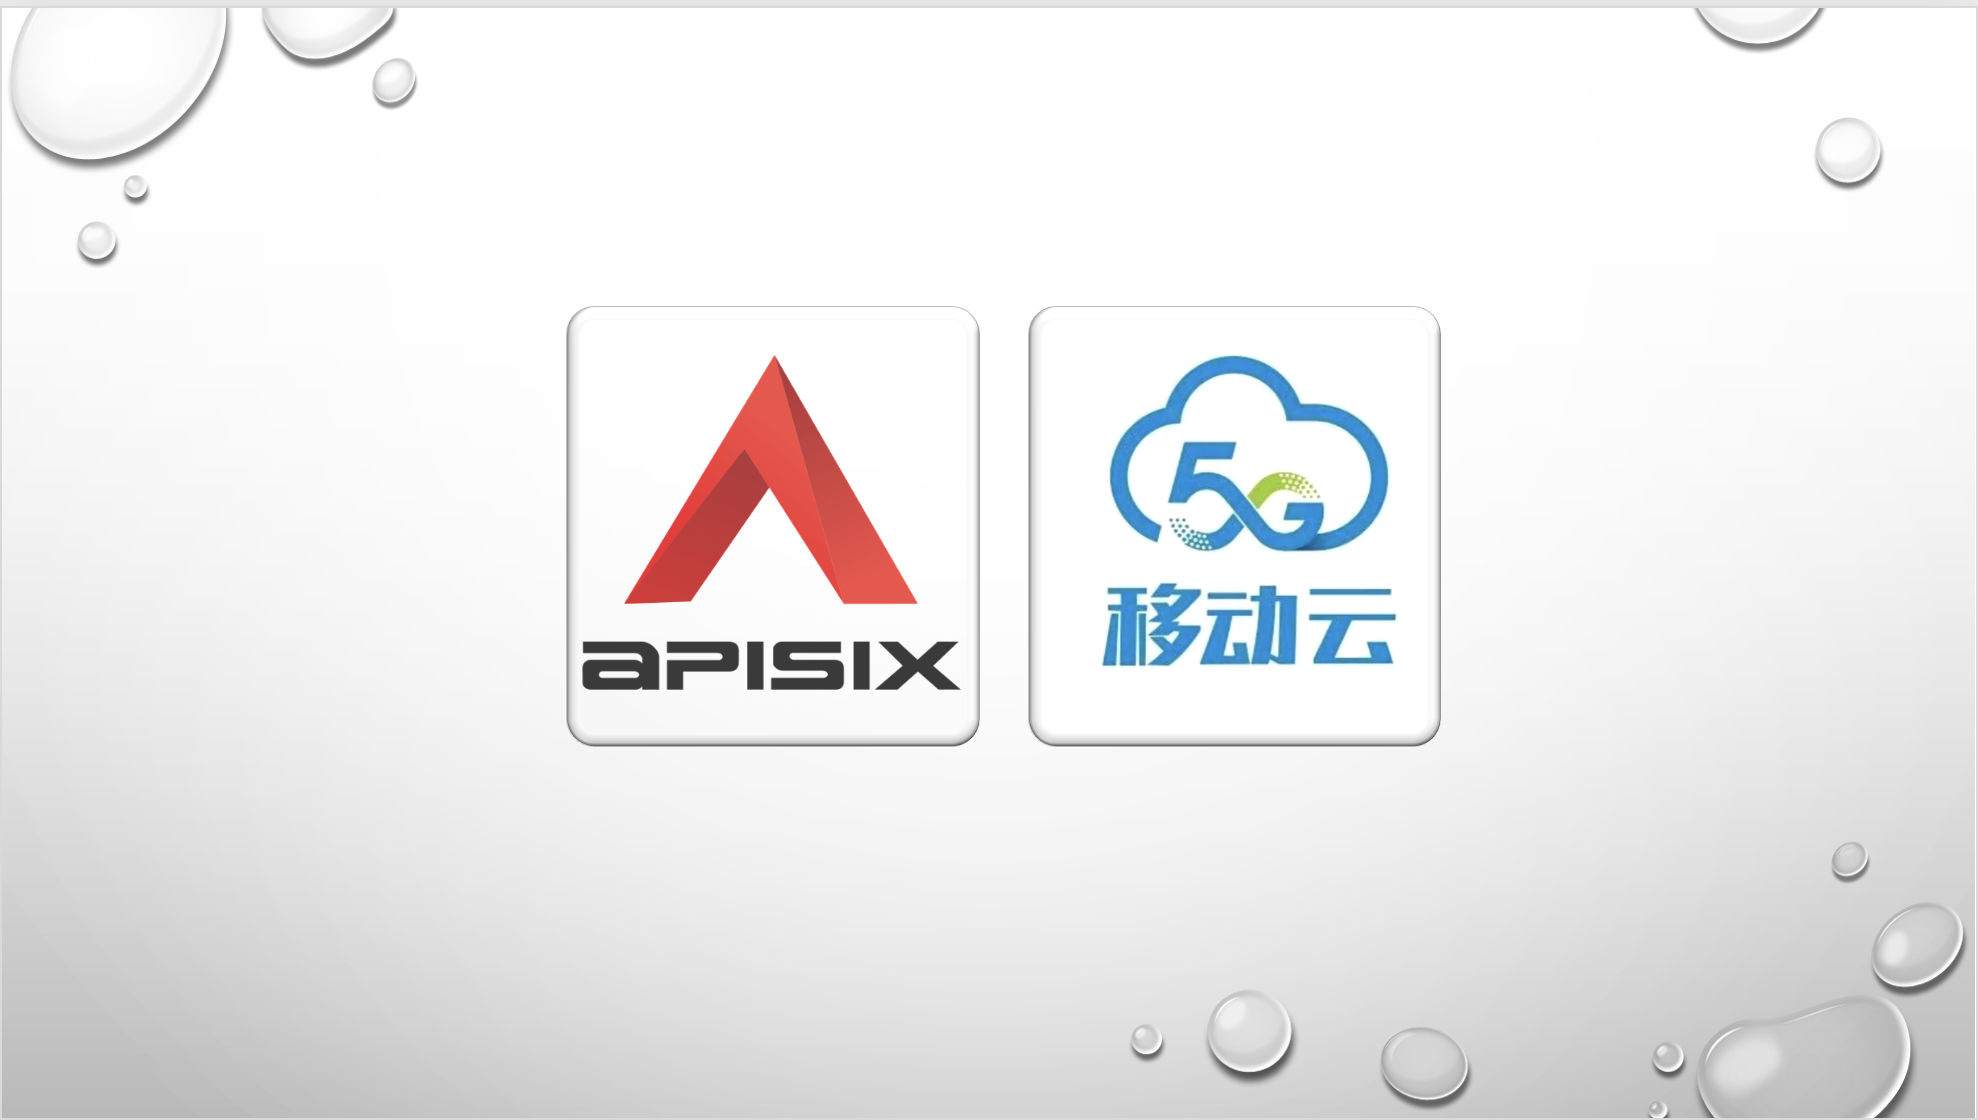 Apache APISIX 在移动云的应用